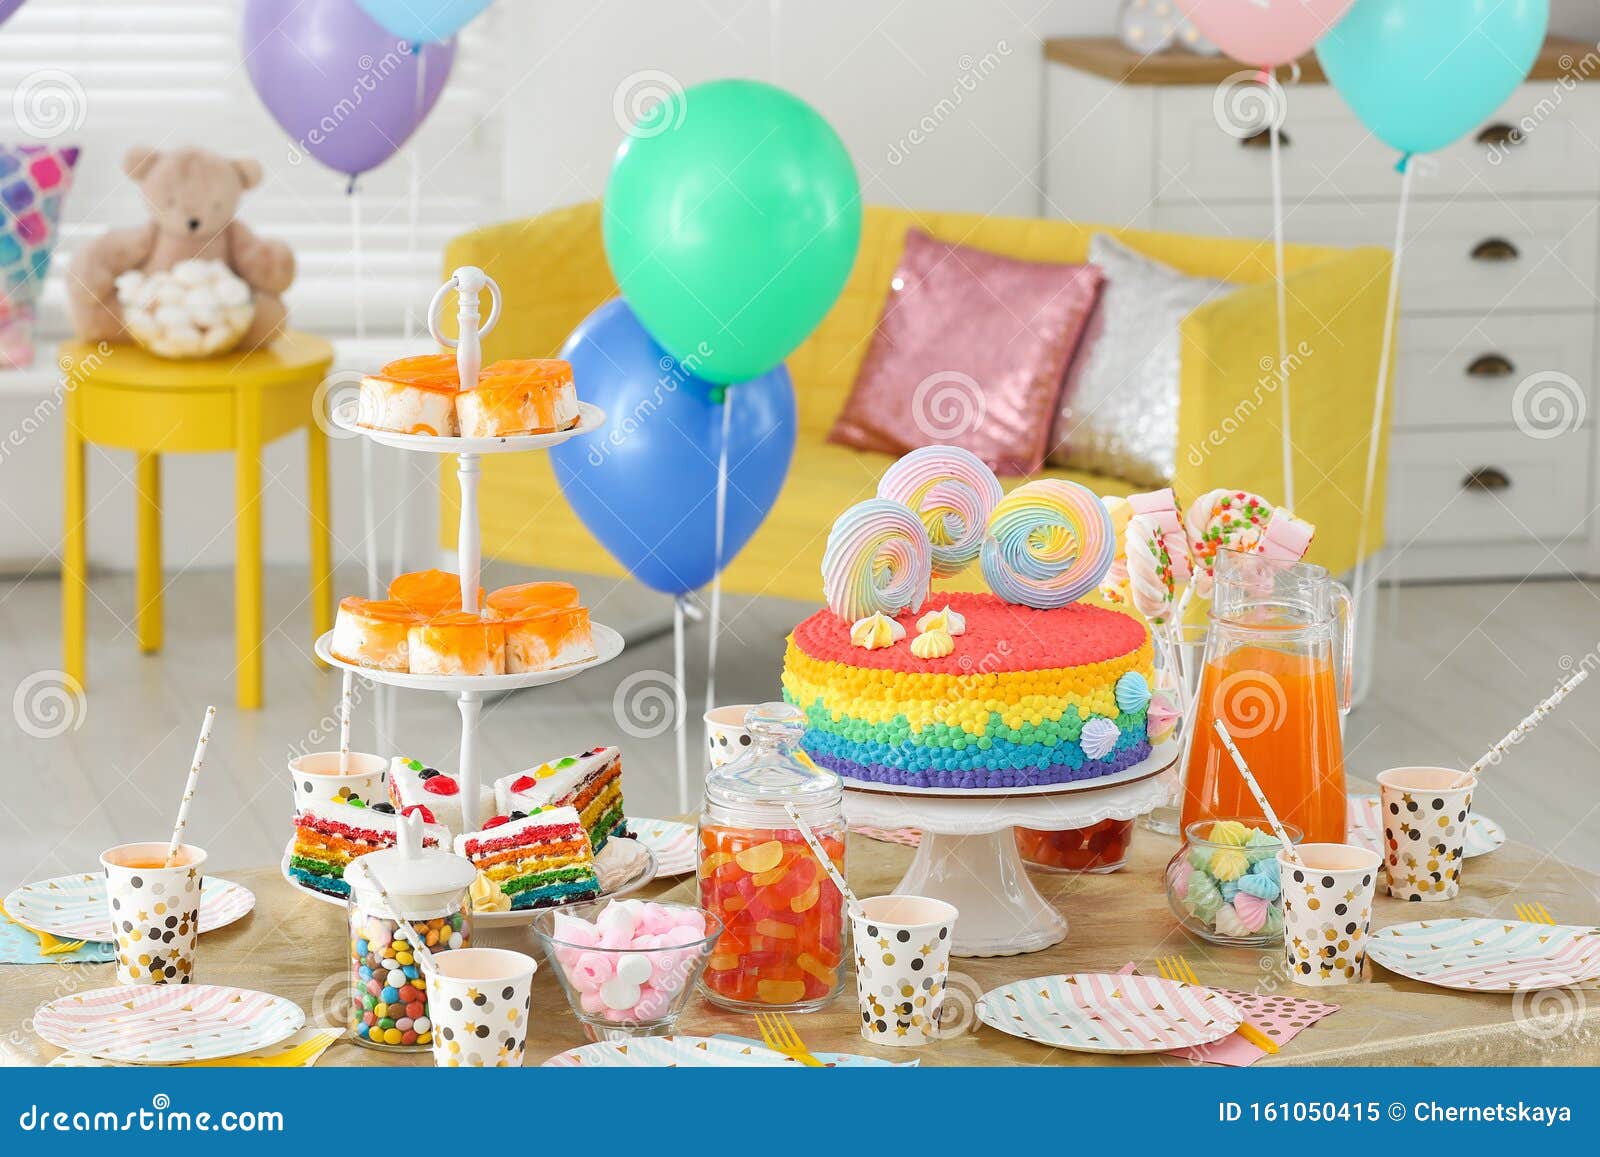 Torta De Cumpleaños Brillante Y Otros Dulces En La Mesa En La Habitación  Imagen de archivo - Imagen de hermoso, cabrito: 161050415